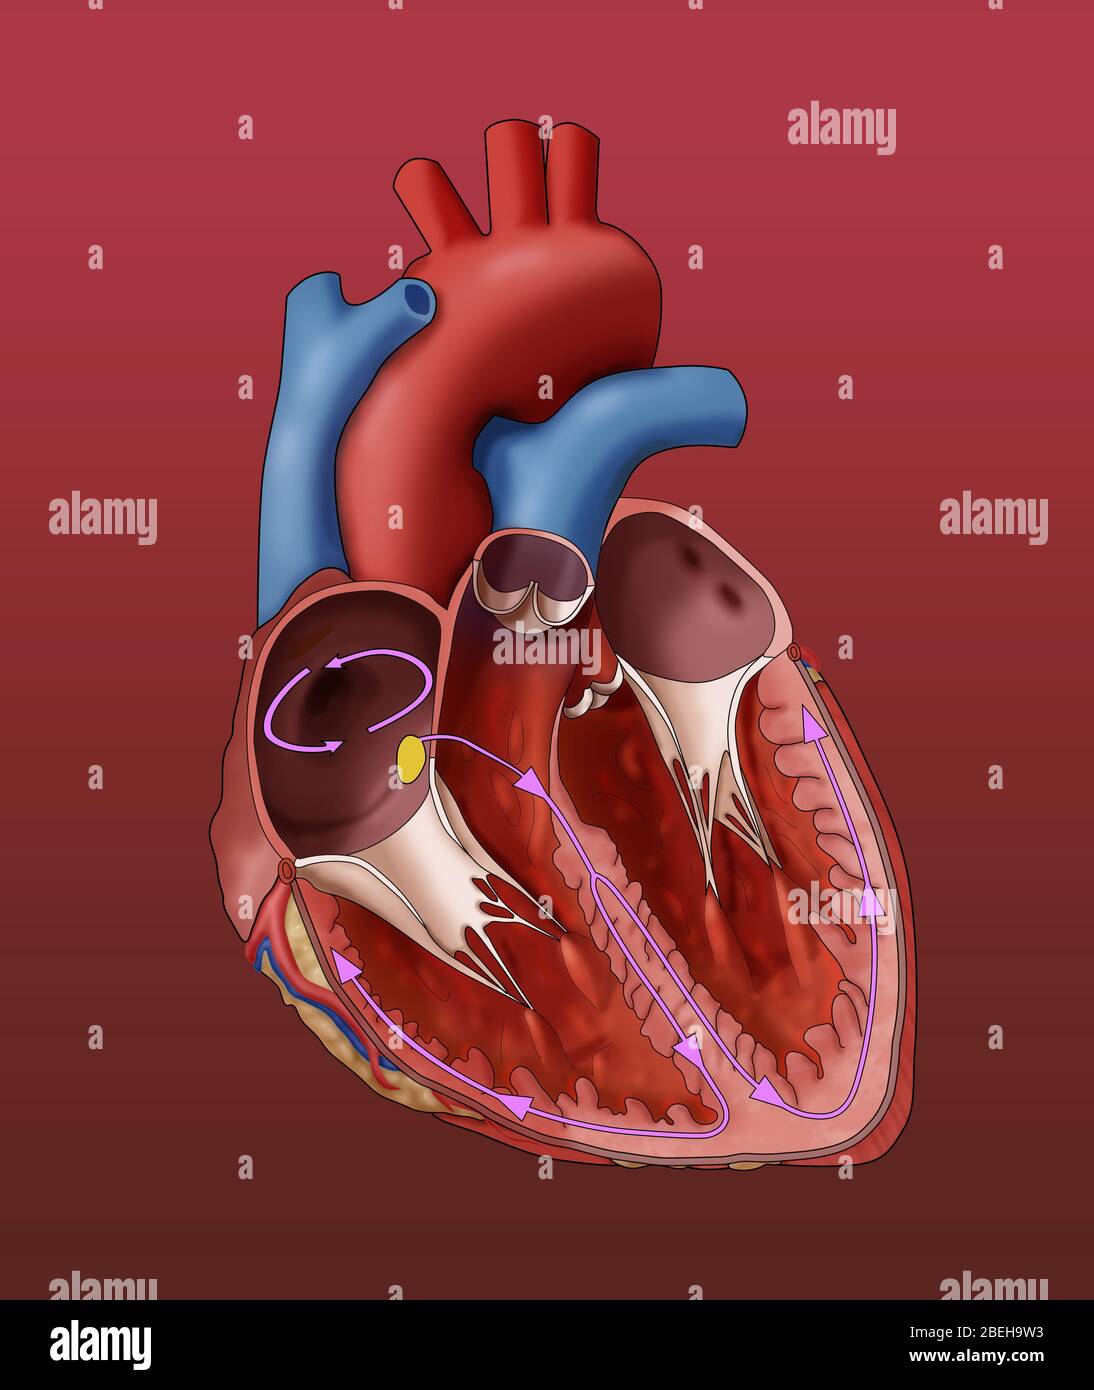 Abbildung eines Herzens, das ein Vorhofflattern, einen anormalen Herzrhythmus, zeigt. Wie hier gezeigt, bewegen sich elektrische Signale innerhalb der Vorhöfe (rosa Kreis) herum und herum; diese kreisenden Signale lassen die Vorhöfe zu schnell schlagen. Stockfoto